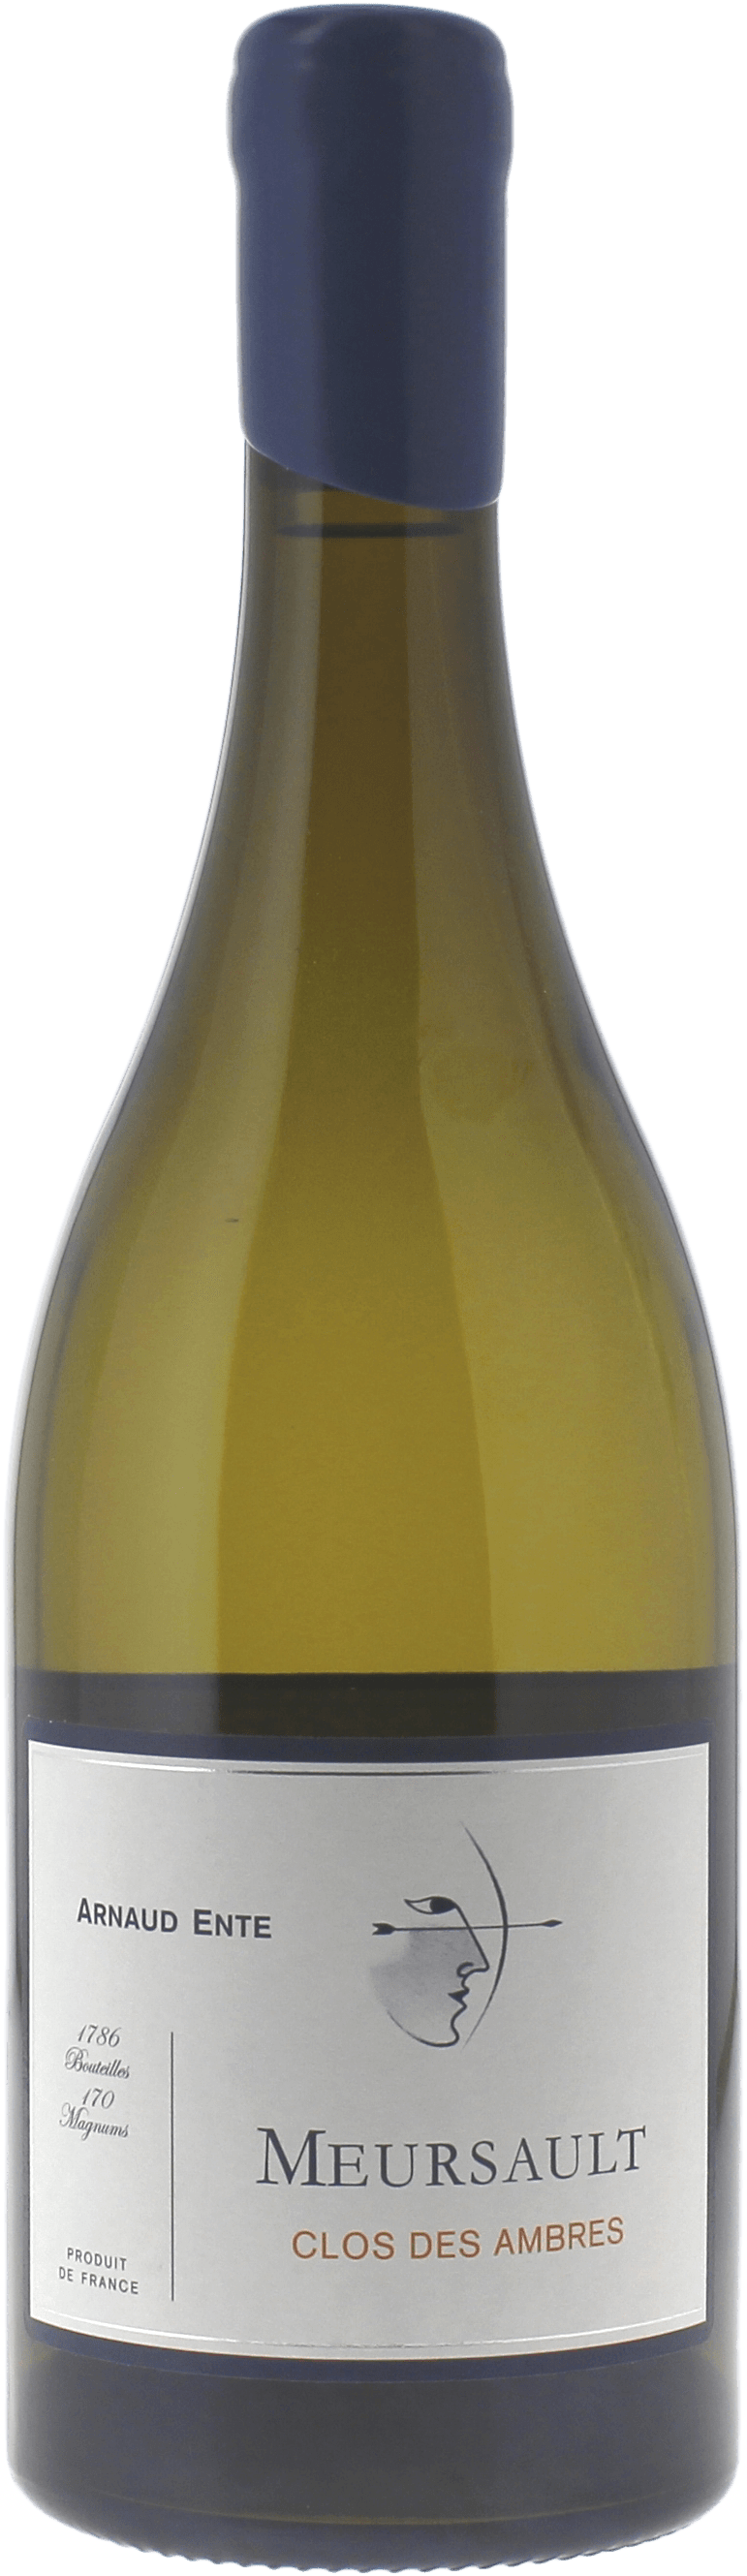 Meursault clos des ambres 2014 Domaine ENTE Arnaud, Bourgogne blanc